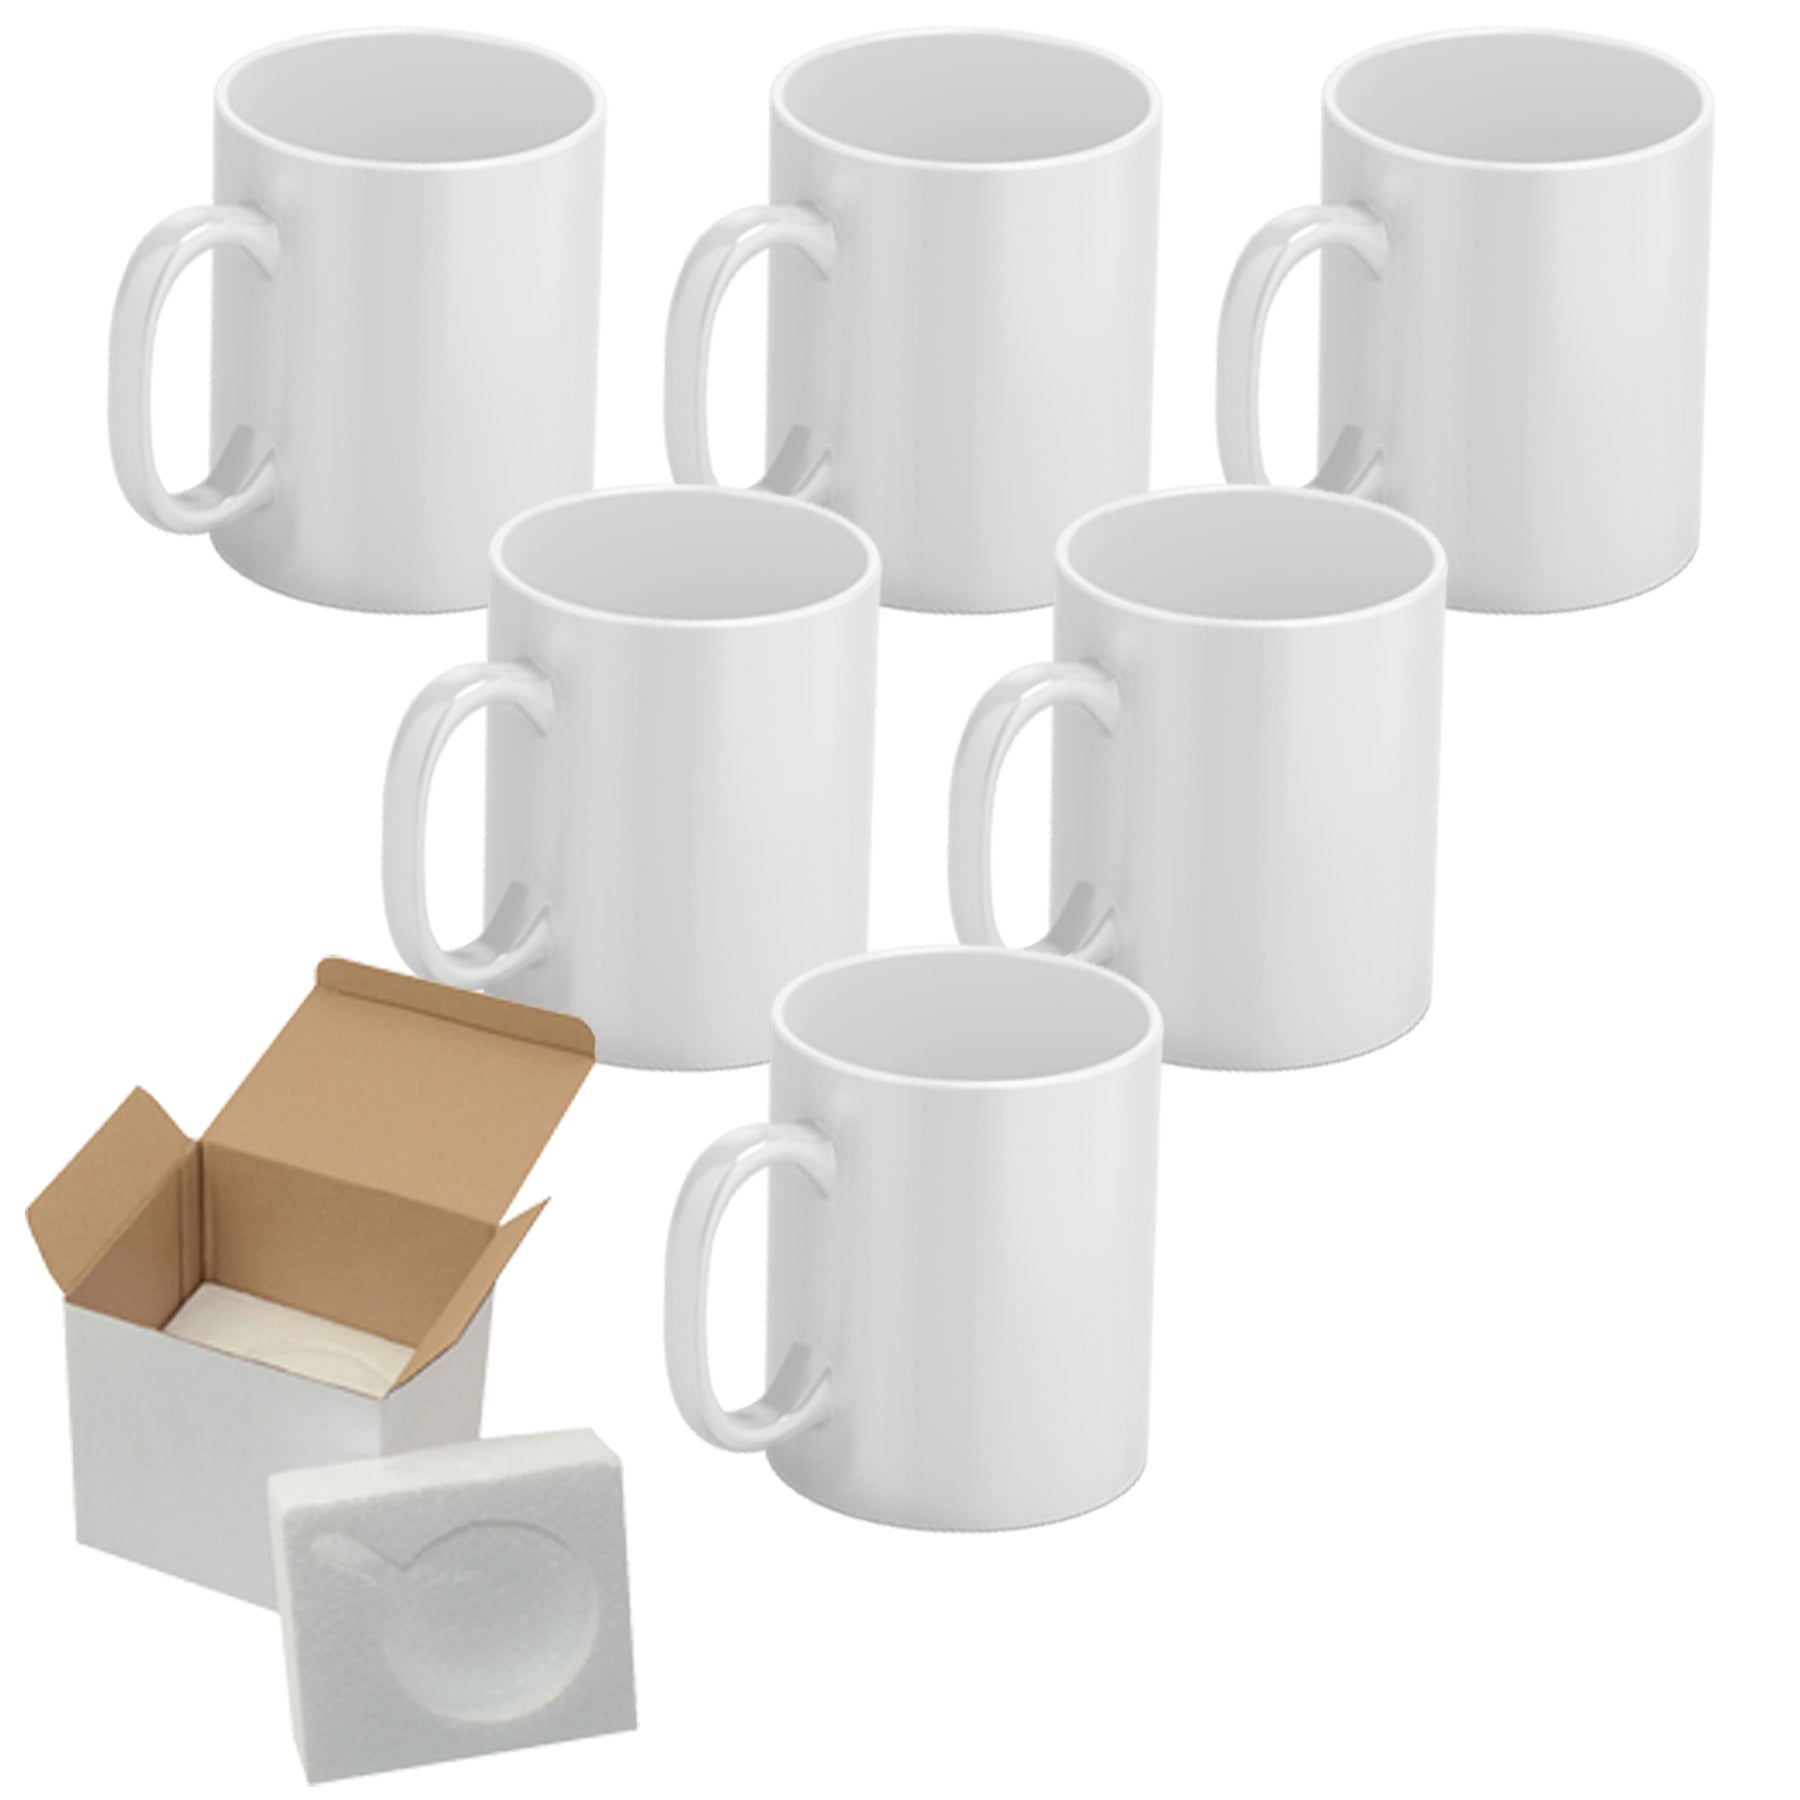 Premium Set of 6 White 15 oz Sublimation Mugs - Dishwasher & Microwave Safe  - Includes Mug Shipping Boxes - Mugsie